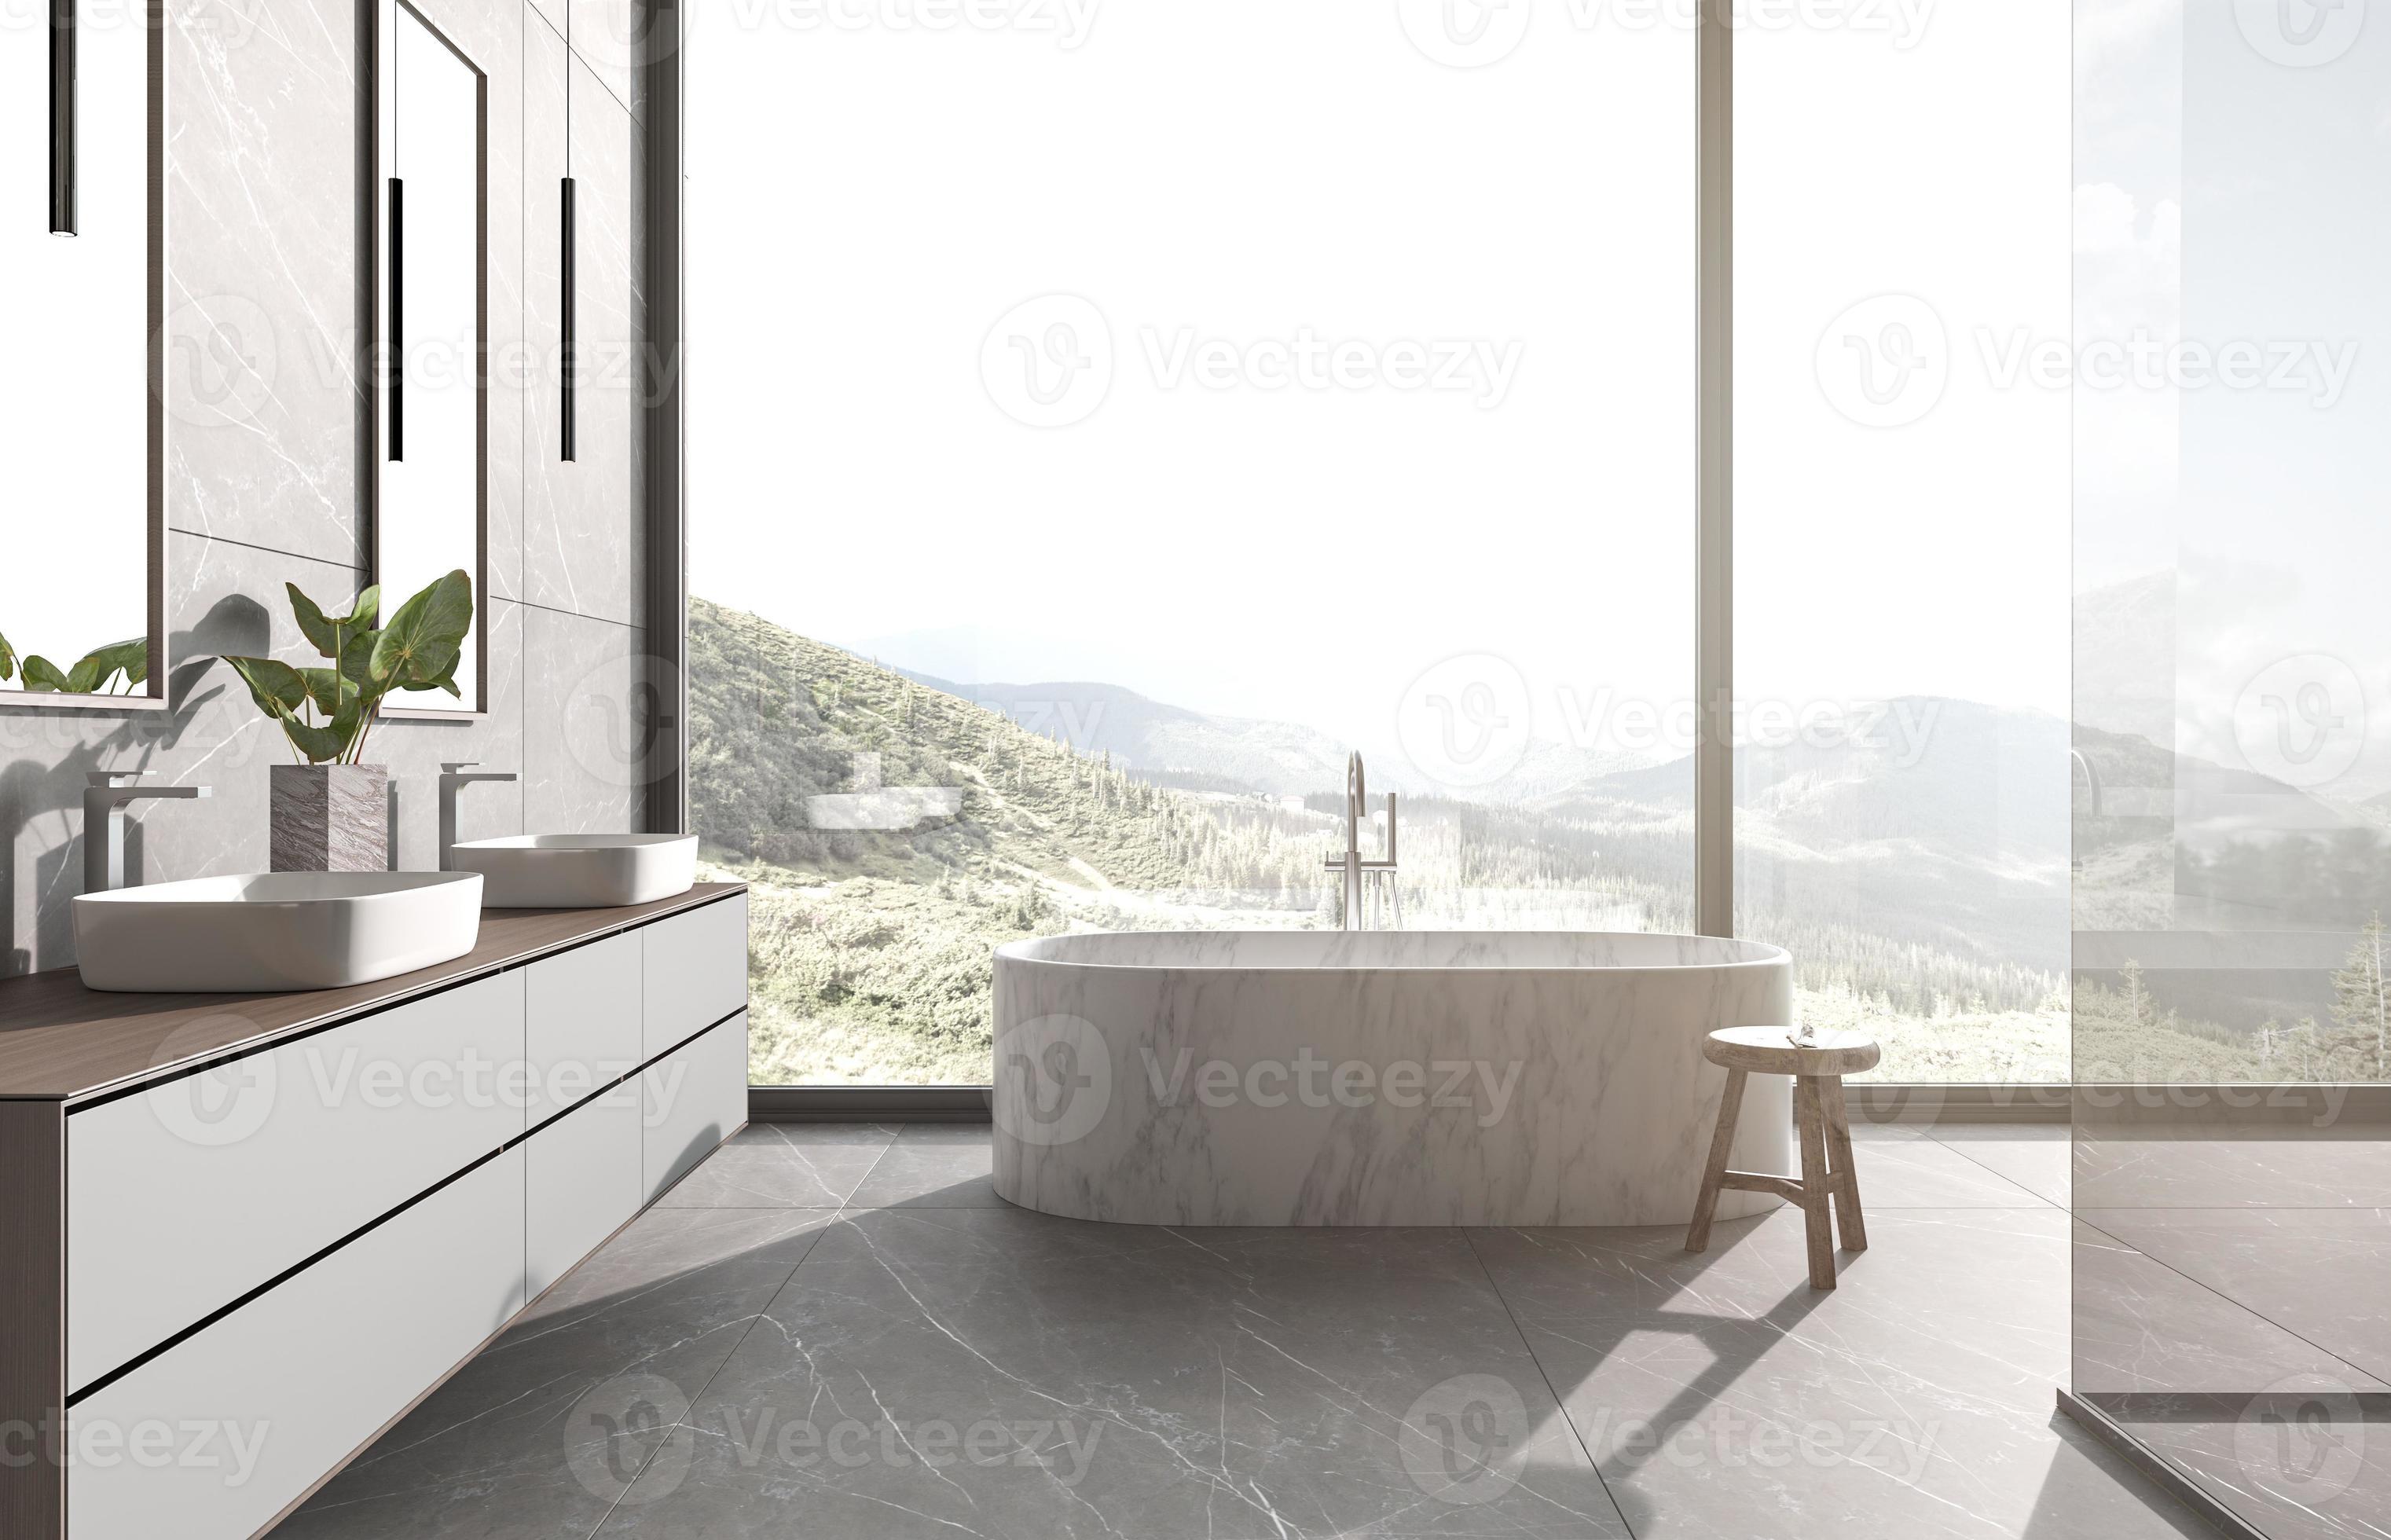 vuilnis moersleutel monteren moderne badkamer interieur met uitzicht op de natuur achtergrond. wastafels,  ligbad en douche. stenen tegel op muur en vloer. 3D render illustratie.  5579269 Stockfoto